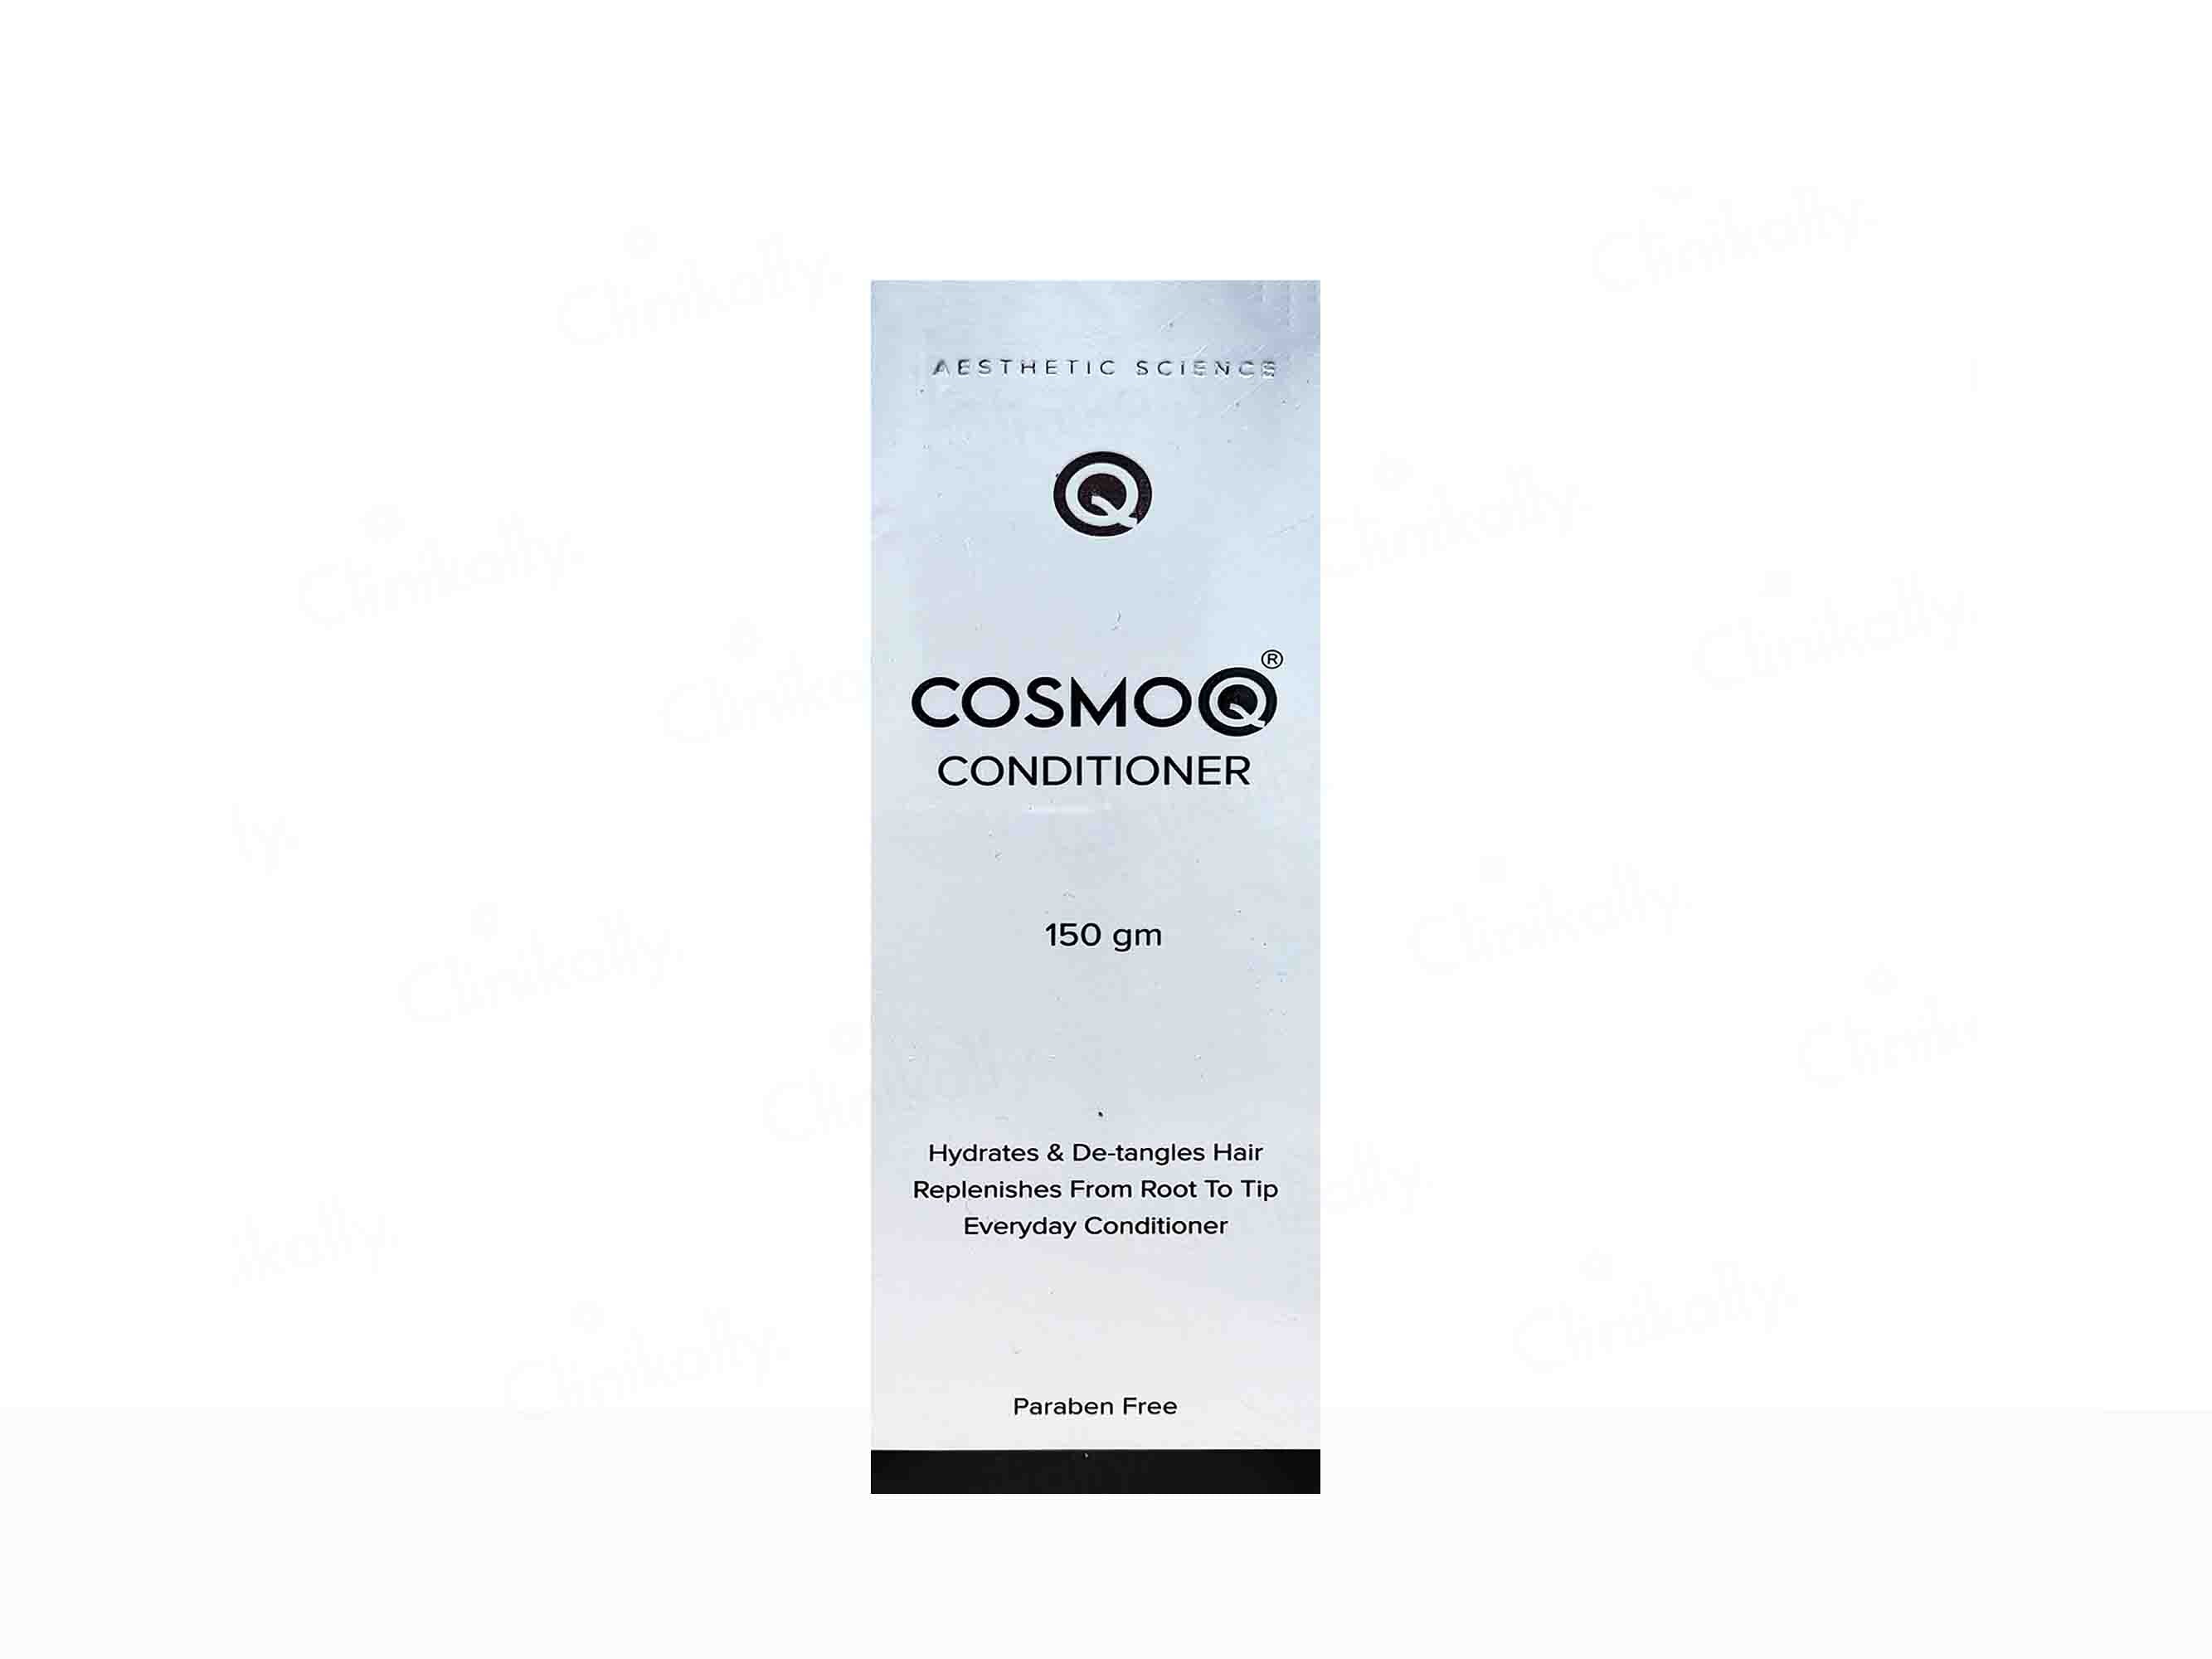 CosmoQ Conditioner